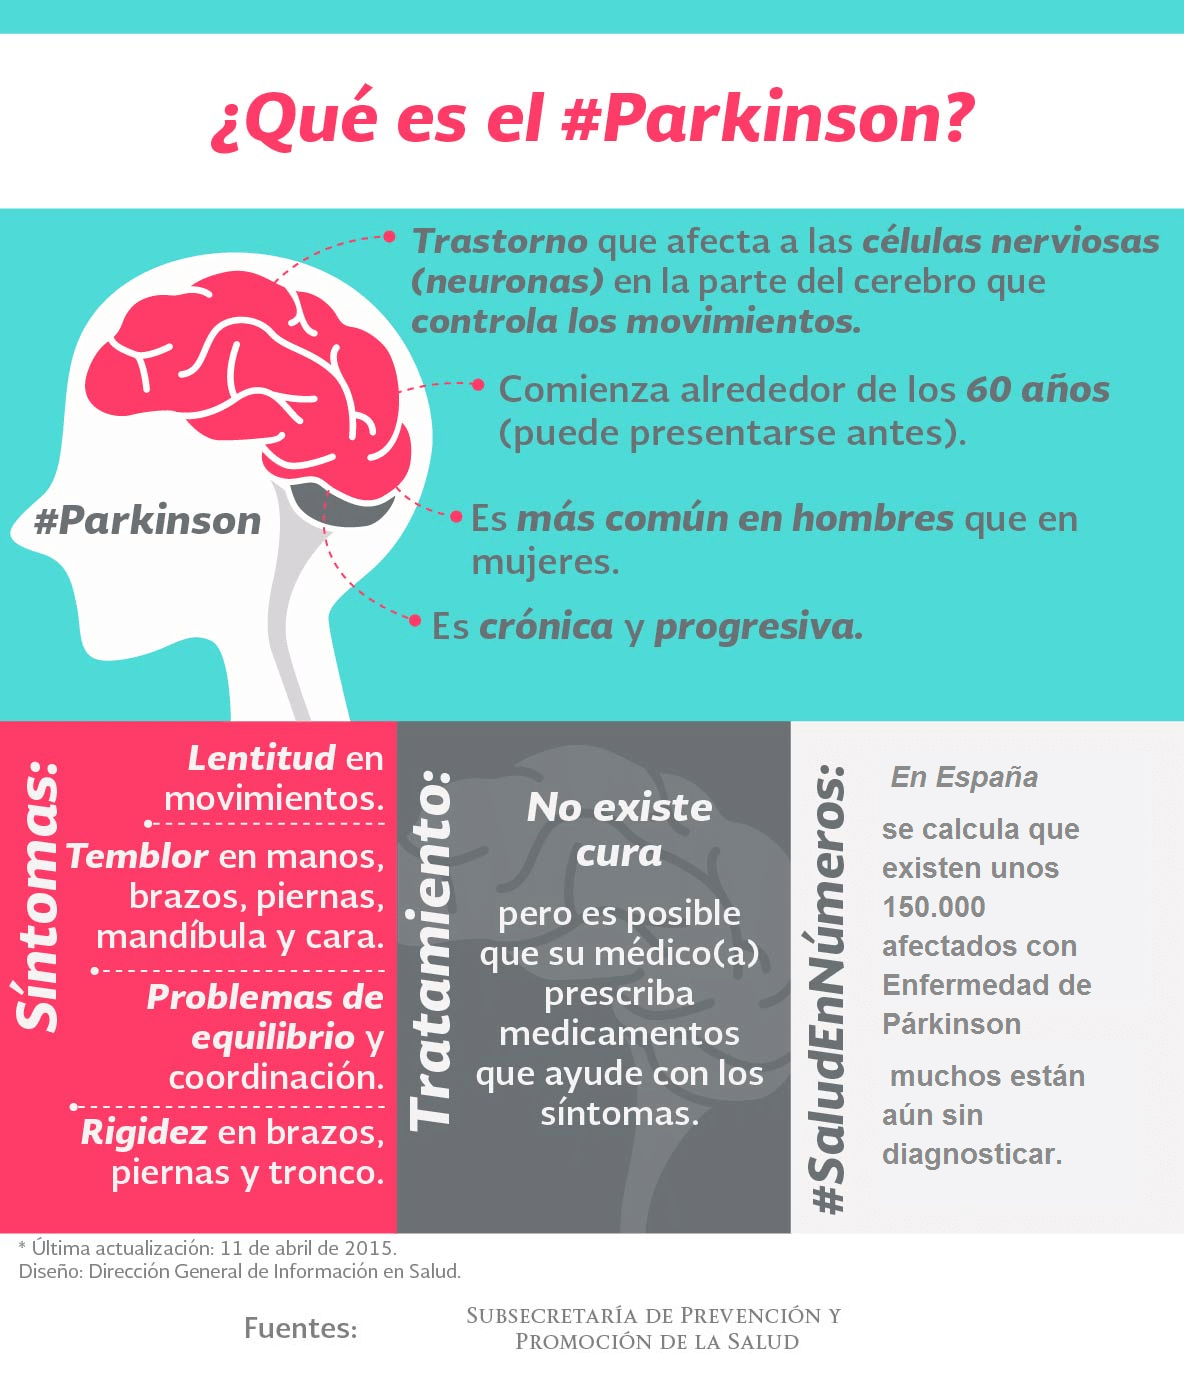 El impactante significado espiritual detrás del Parkinson que te sorprenderá